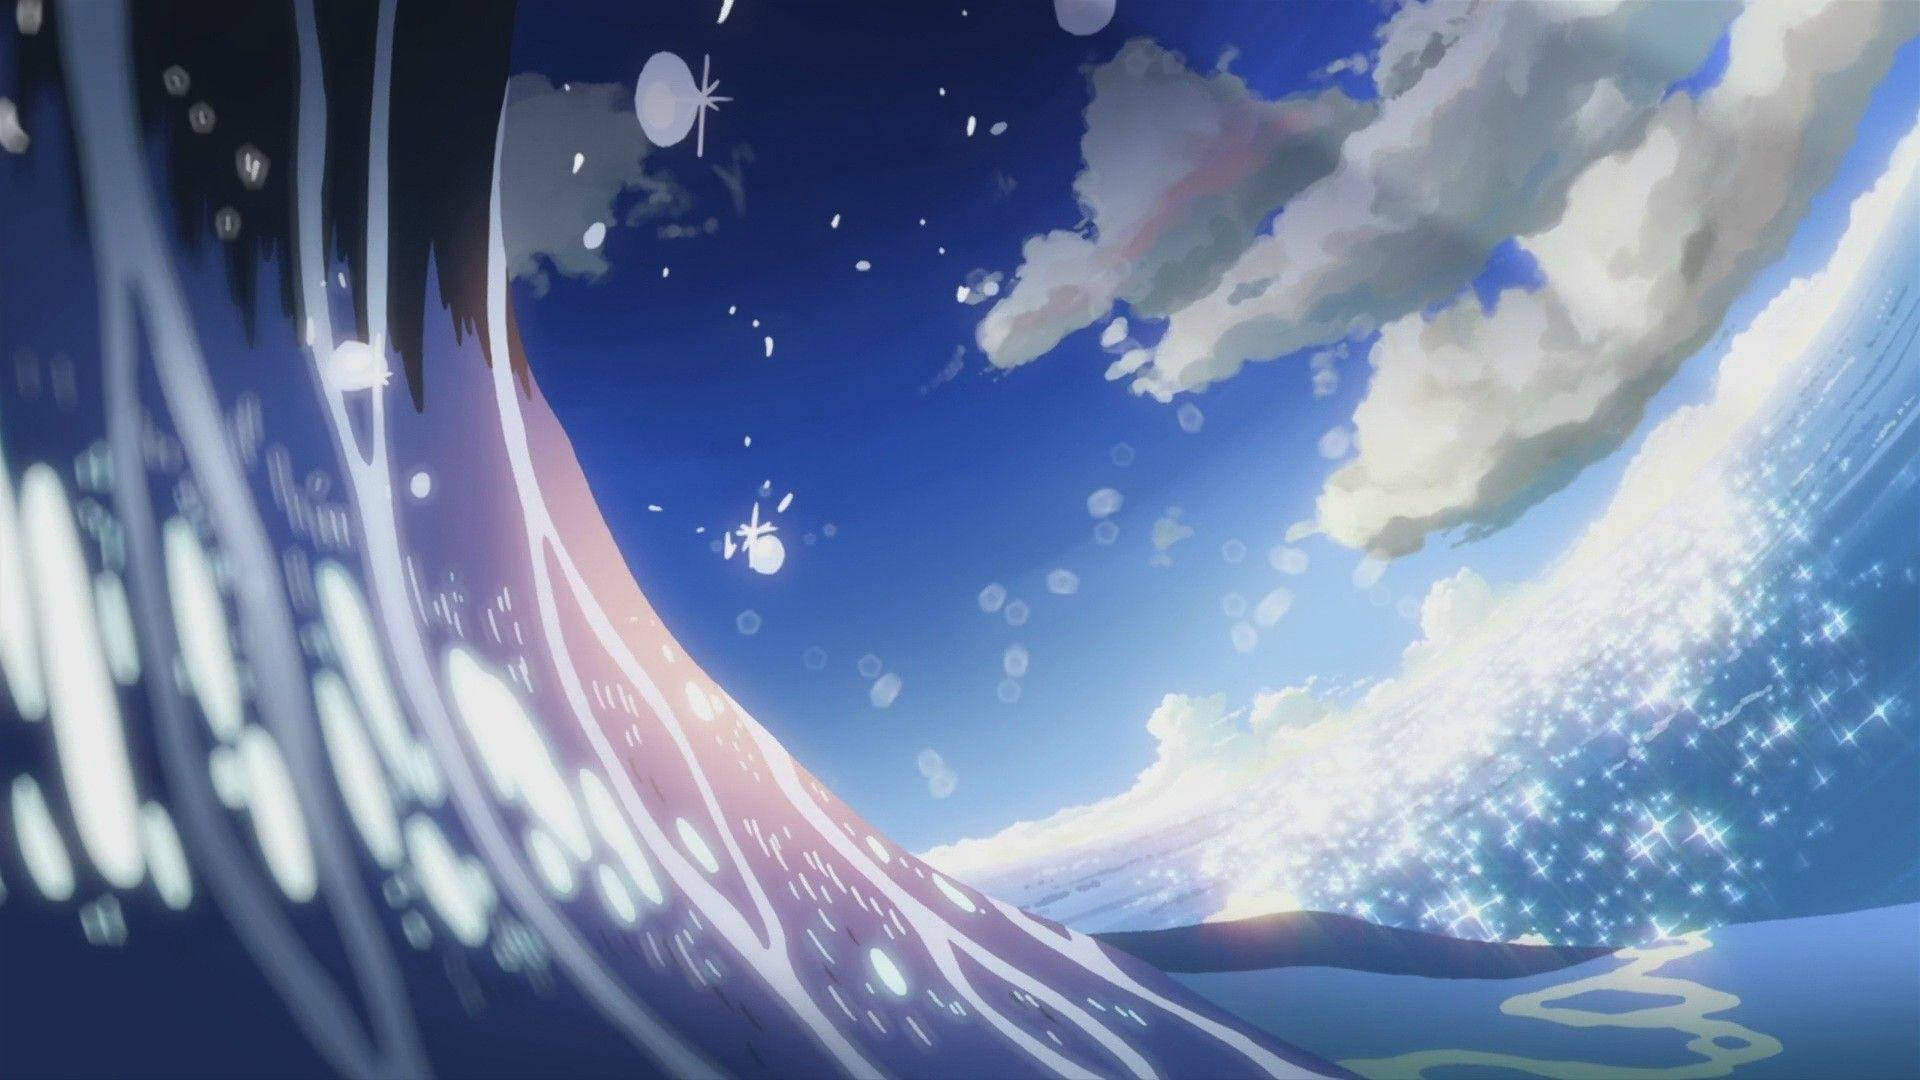 Aesthetic Anime Scenery Of Ocean Waves